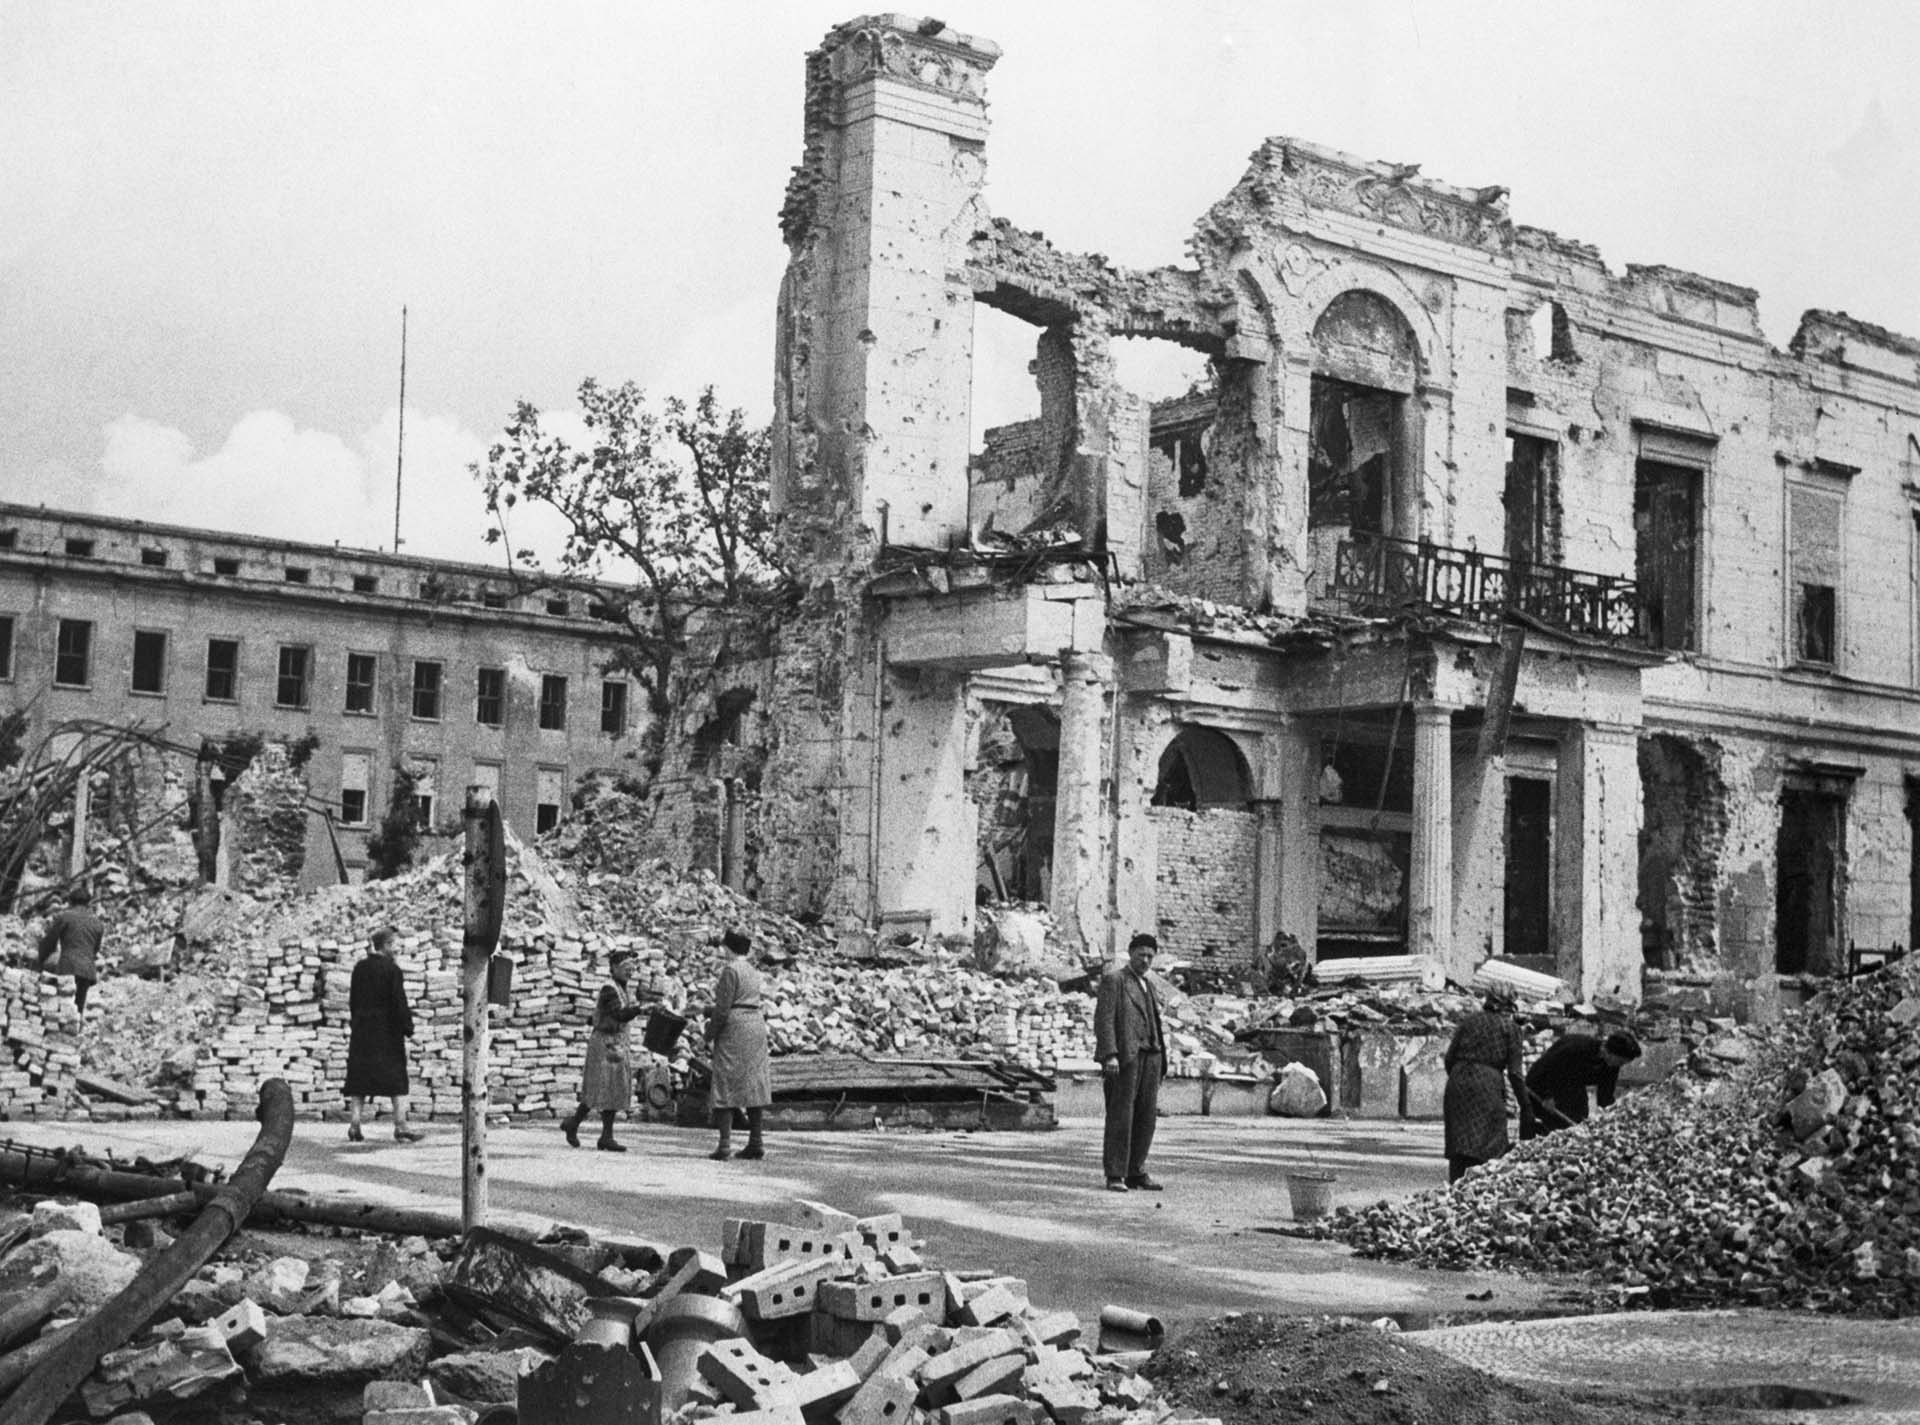 En julio de 1945, Berlín era una ciudad destrozada. Las calles estaban repletas de escombros, la gente sufría hambre y en ese contexto, las tropas de la Unión Soviética que la habían ocupado violaban a todas las mujeres que podían (Original Caption, Bettmann)